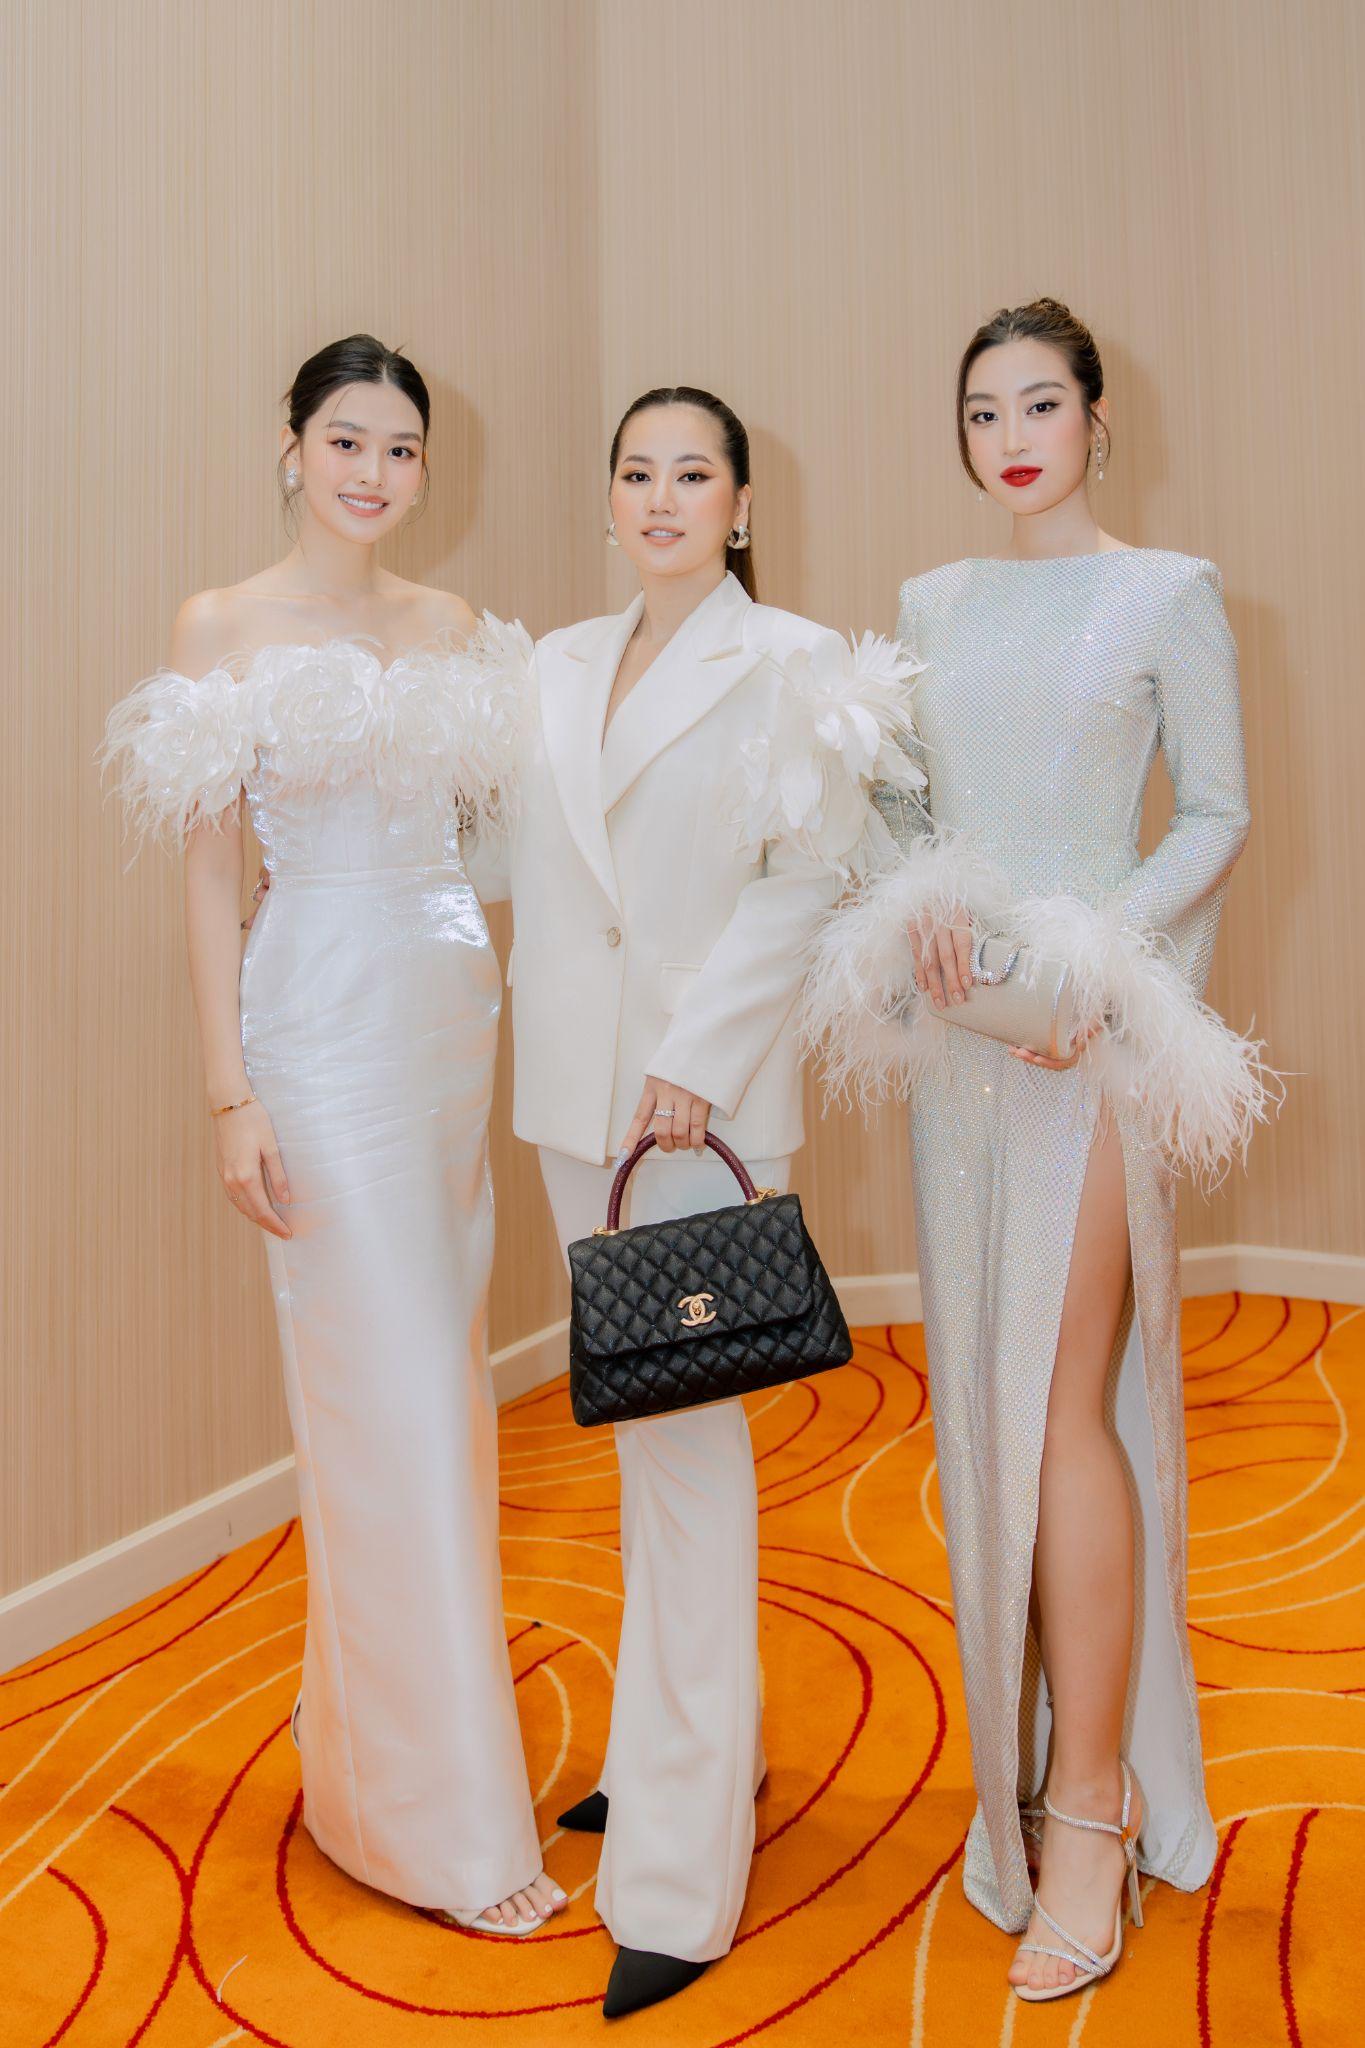 CEO Ngân Thị đấu giá thành công đầm dạ hội của nhà thiết kế Đỗ Long tại đêm gala từ thiện Beauty With A Purpose - Ảnh 3.